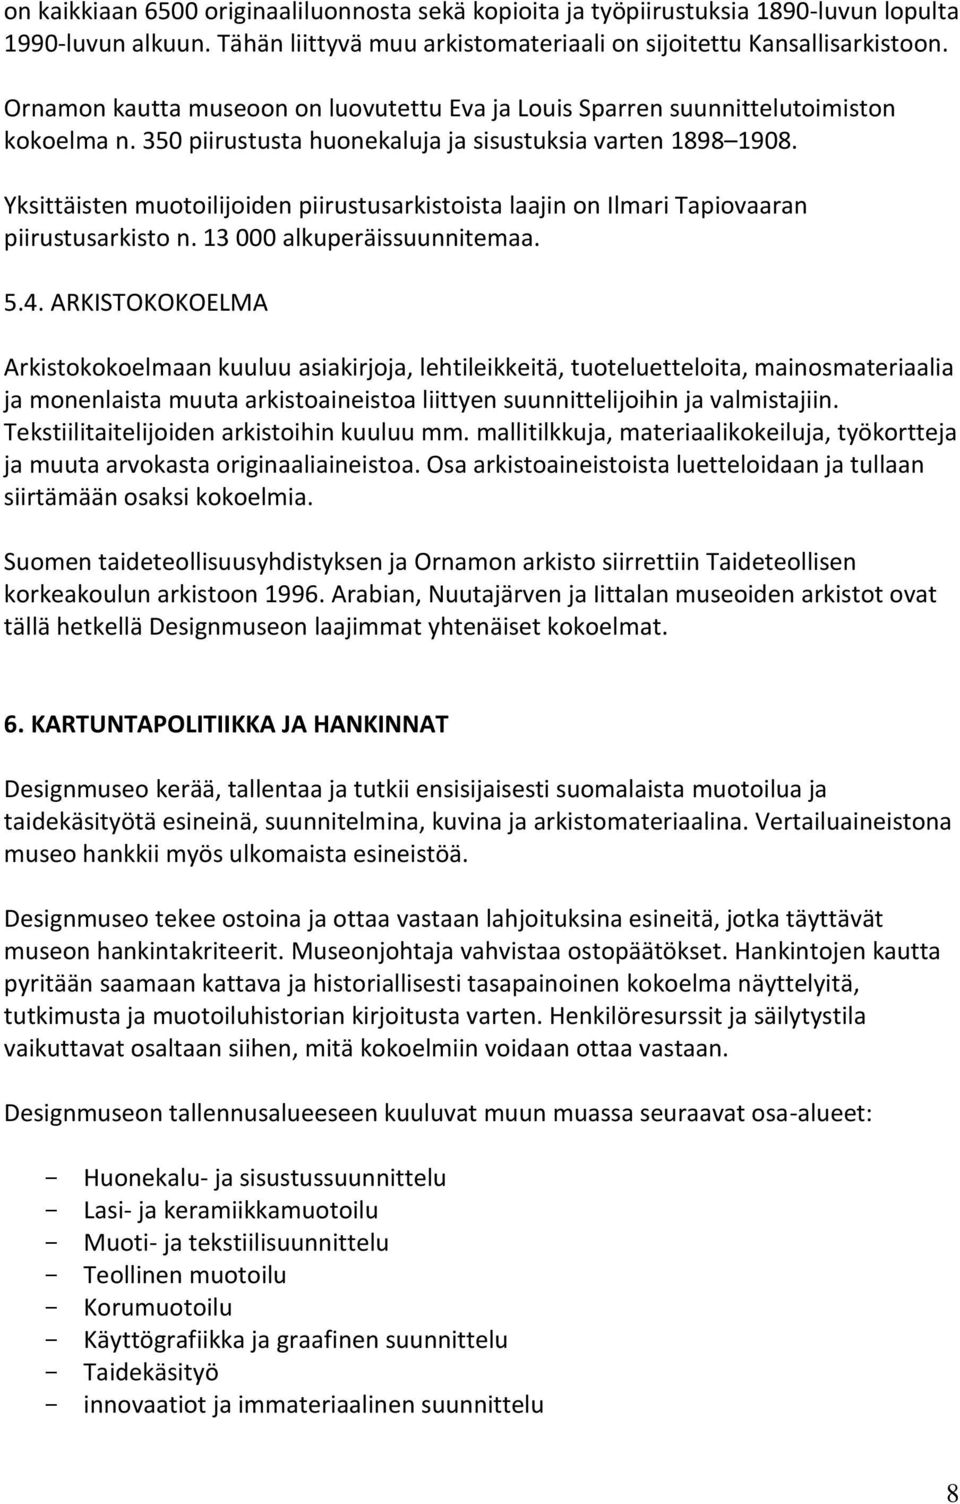 Yksittäisten muotoilijoiden piirustusarkistoista laajin on Ilmari Tapiovaaran piirustusarkisto n. 13 000 alkuperäissuunnitemaa. 5.4.